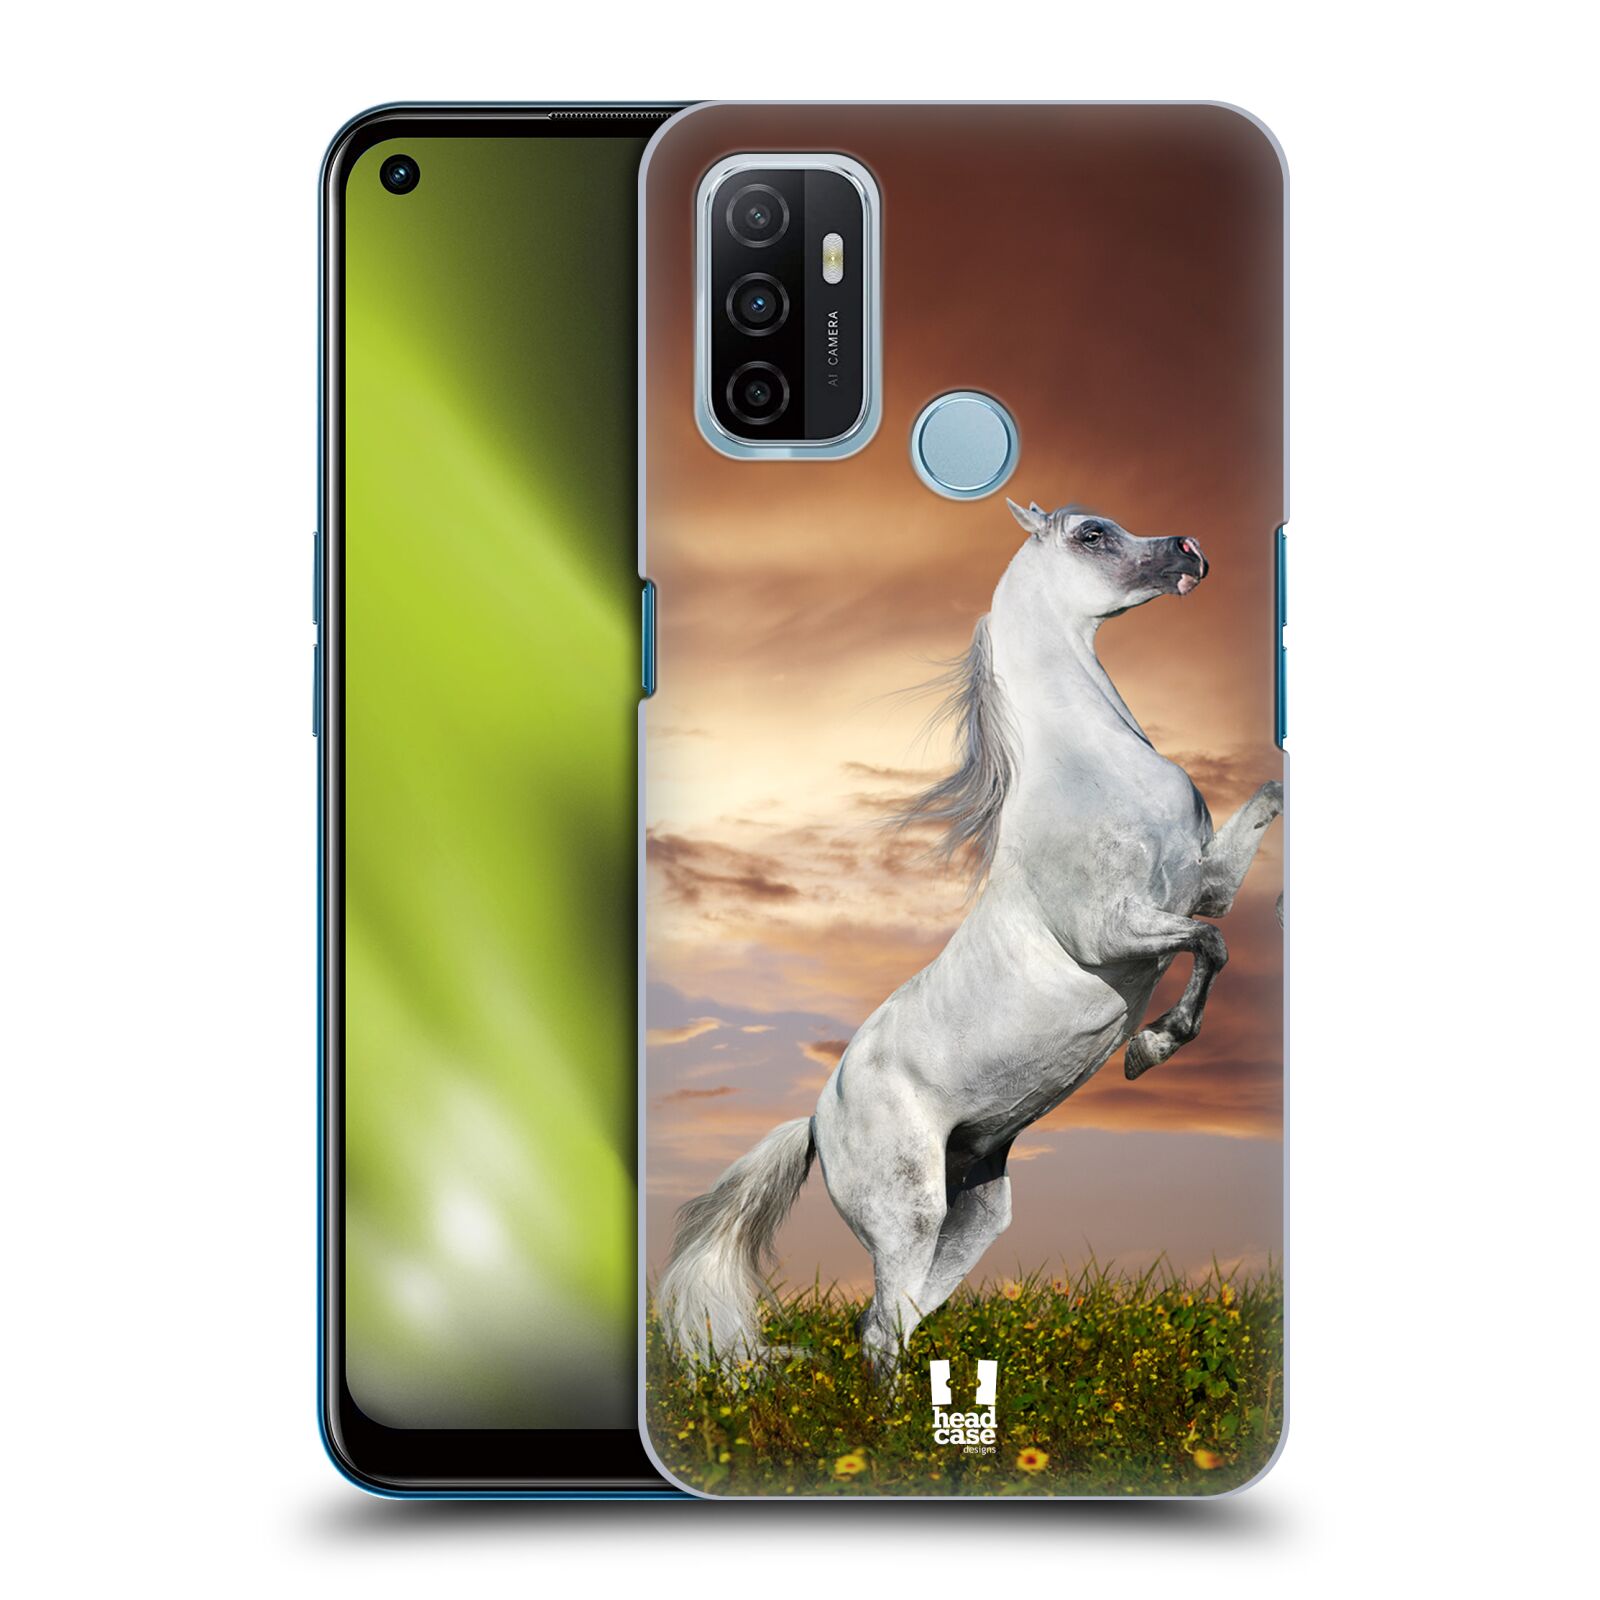 Zadní obal pro mobil Oppo A53 / A53s - HEAD CASE - Svět zvířat divoký kůň